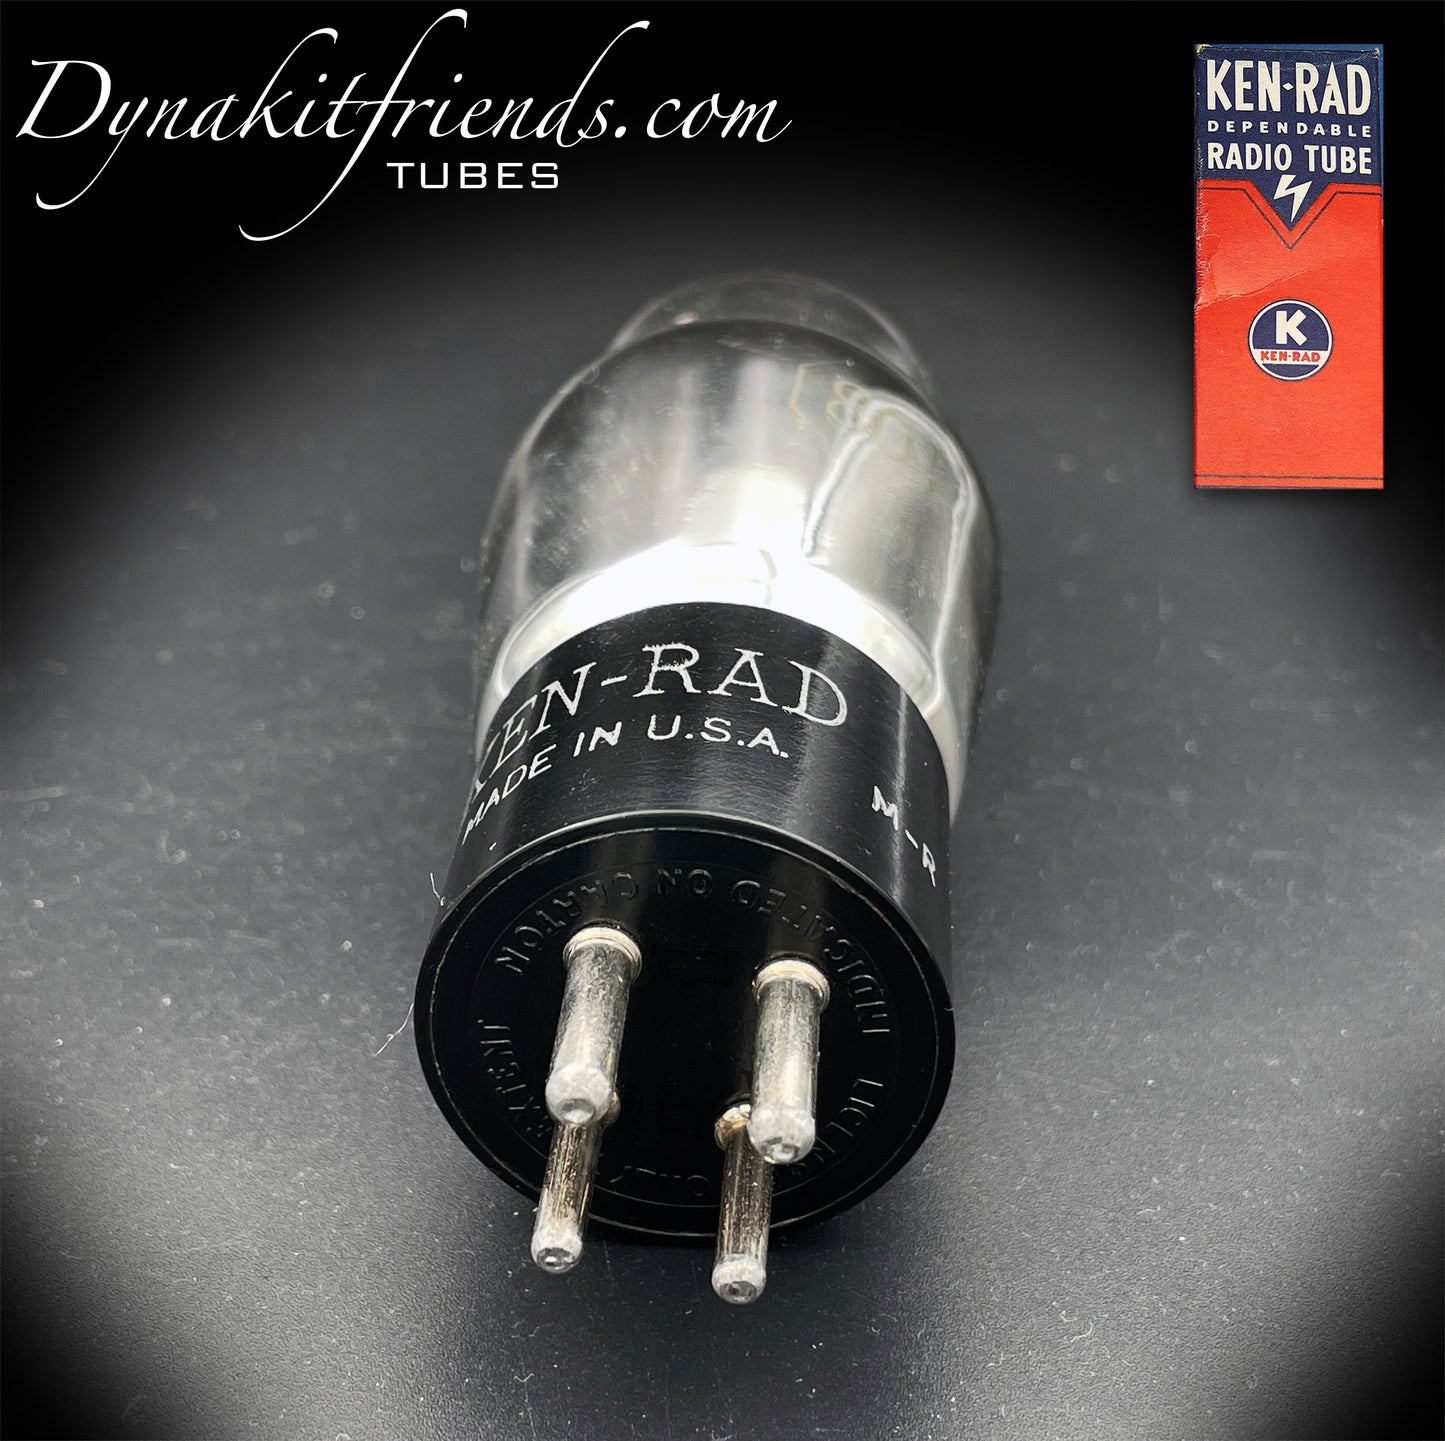 80 (110E/59) KEN-RAD Tubo rectificador de filamentos colgantes de placas negras fabricado en EE. UU.